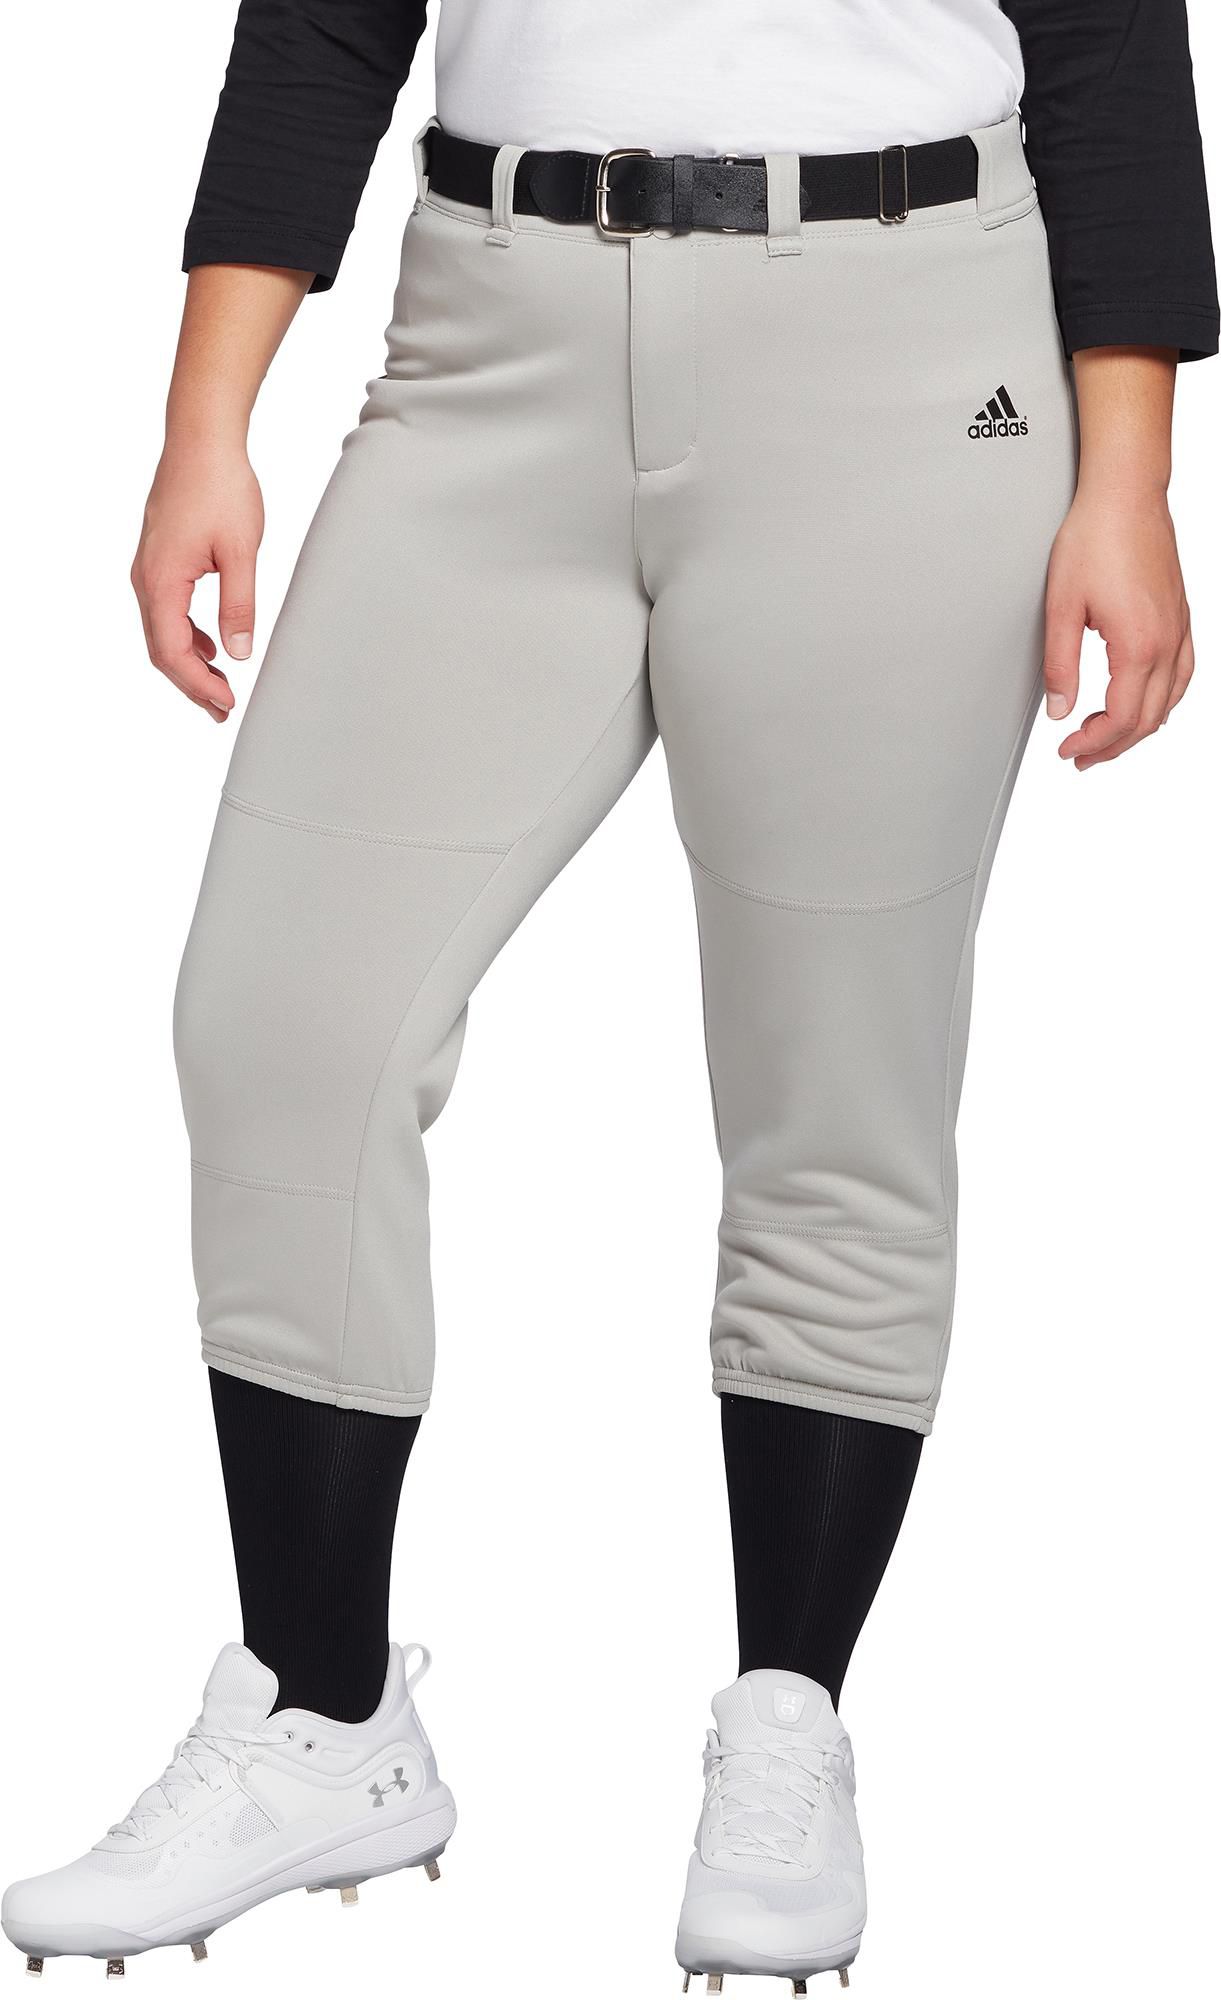 adidas softball pants